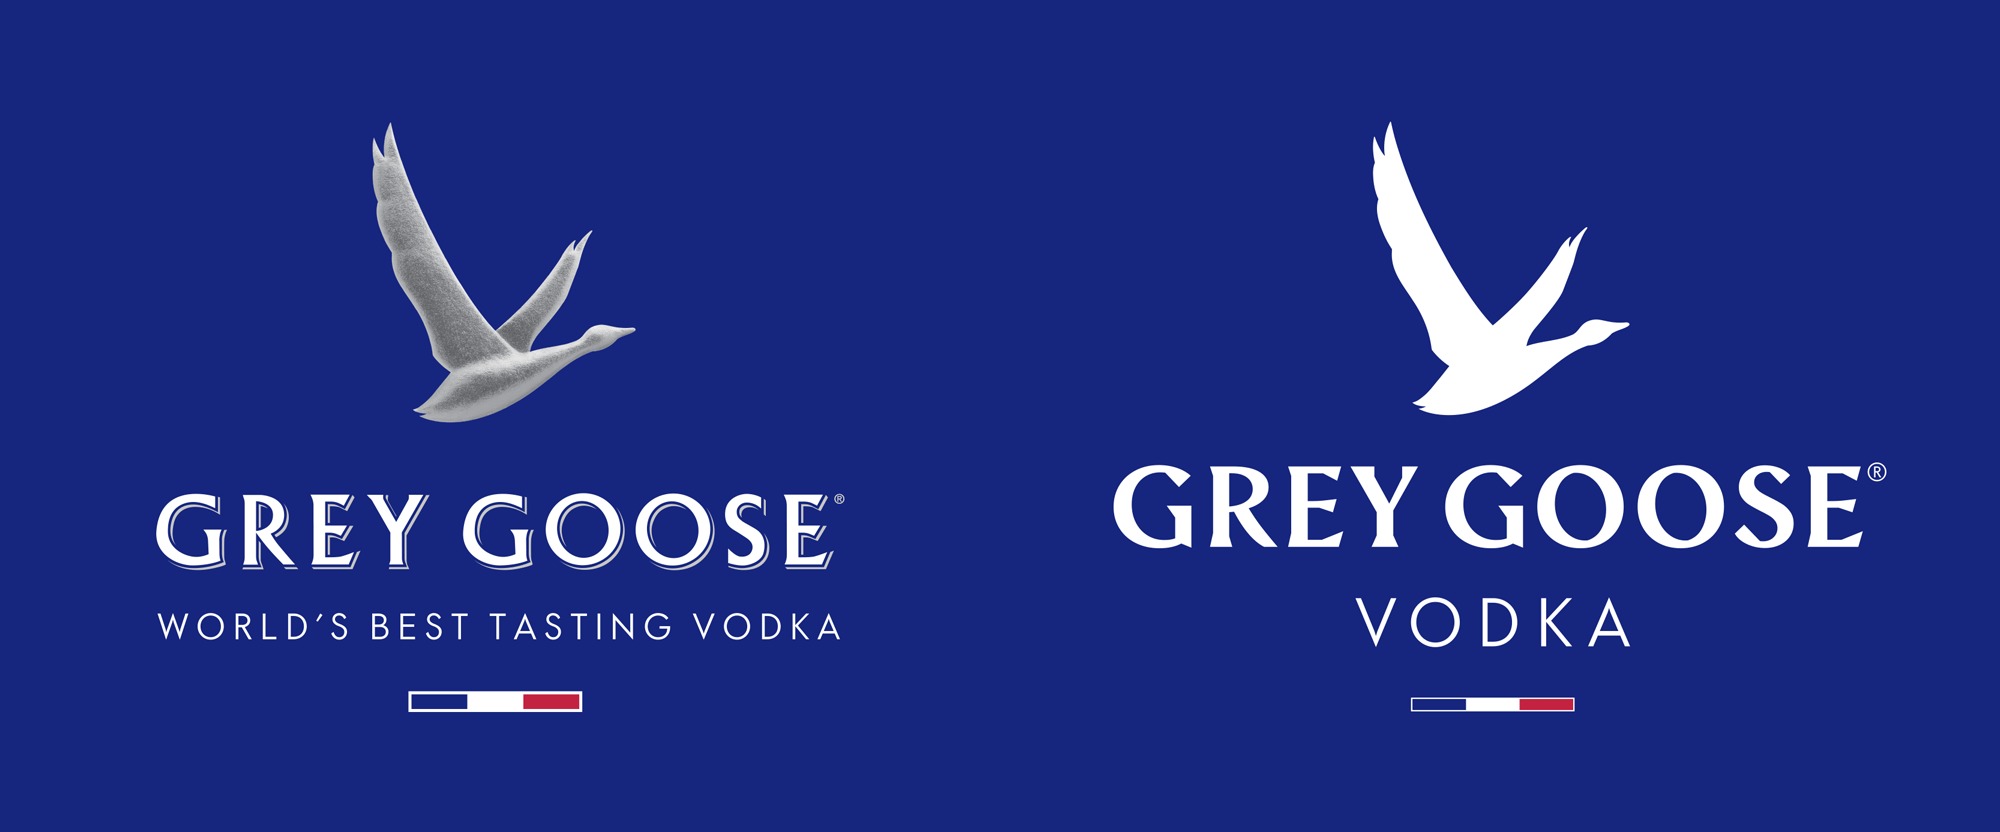 grey goose logo vx 300dpi vector